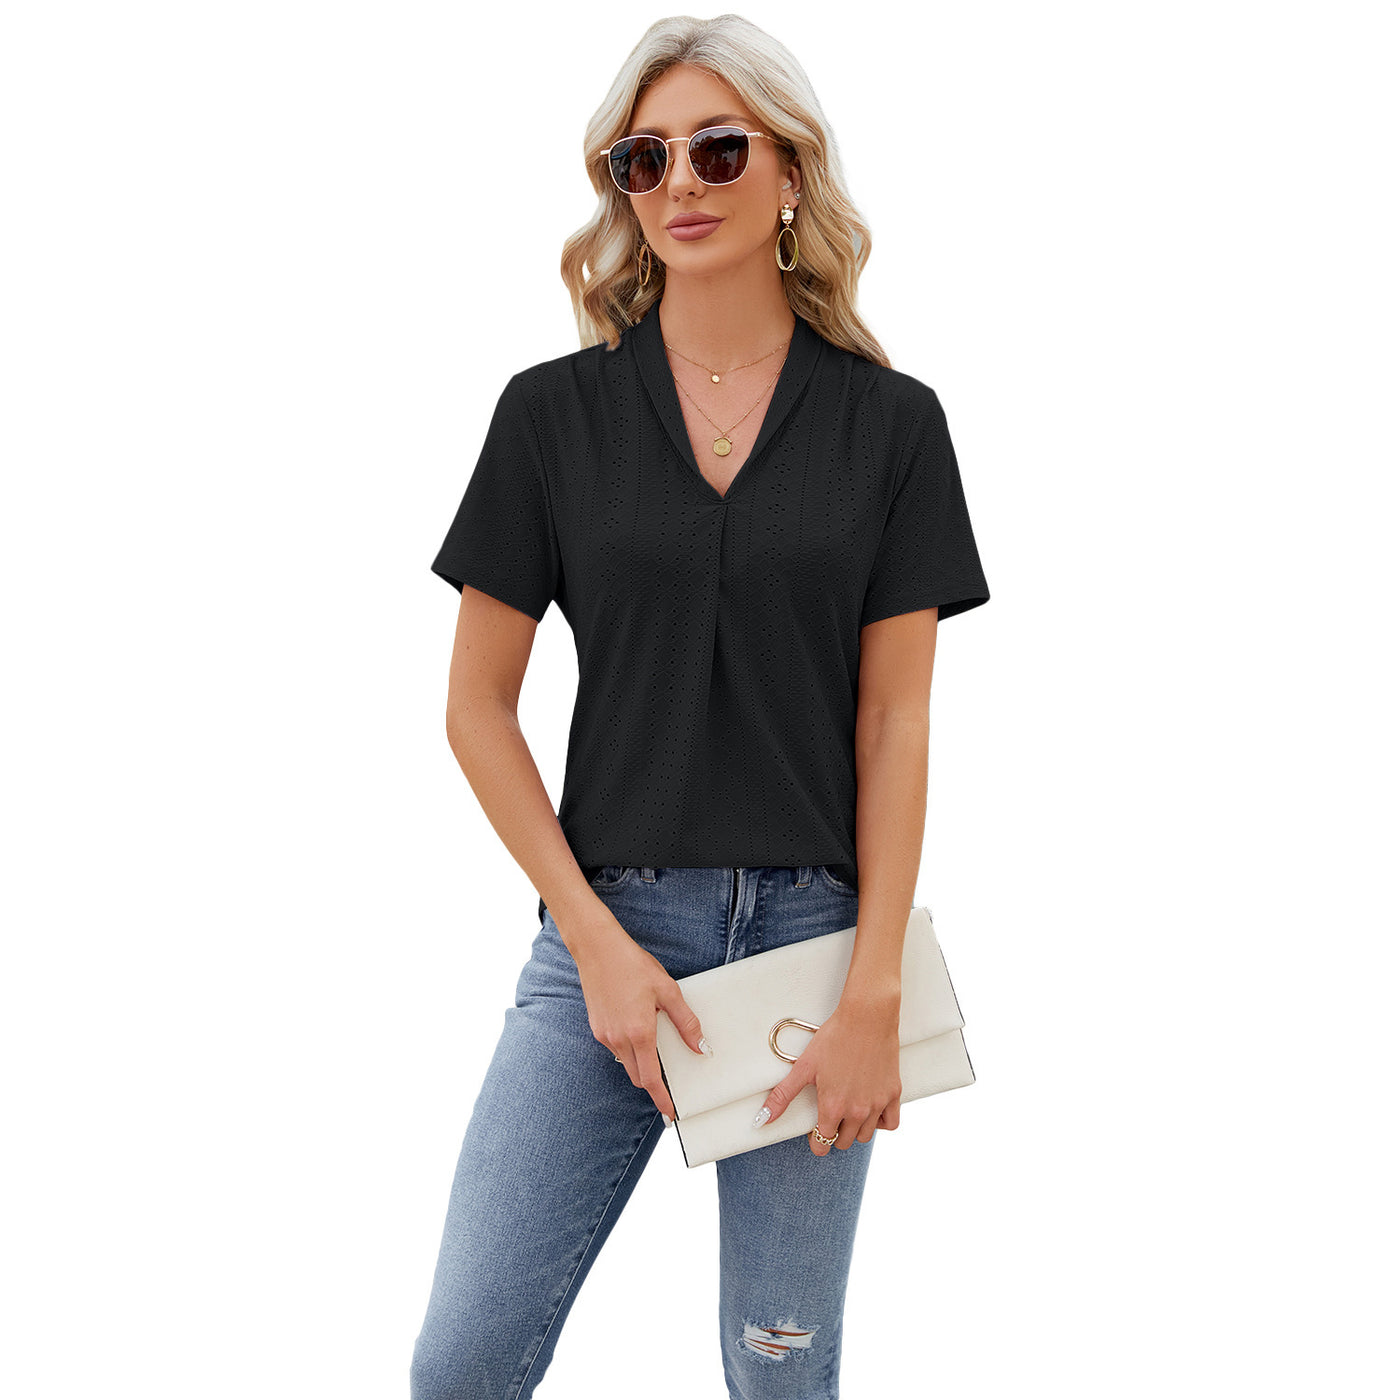 V-neck Hollow T-shirt Women's Summer Loose Short-sleeve Top - Carvan Mart